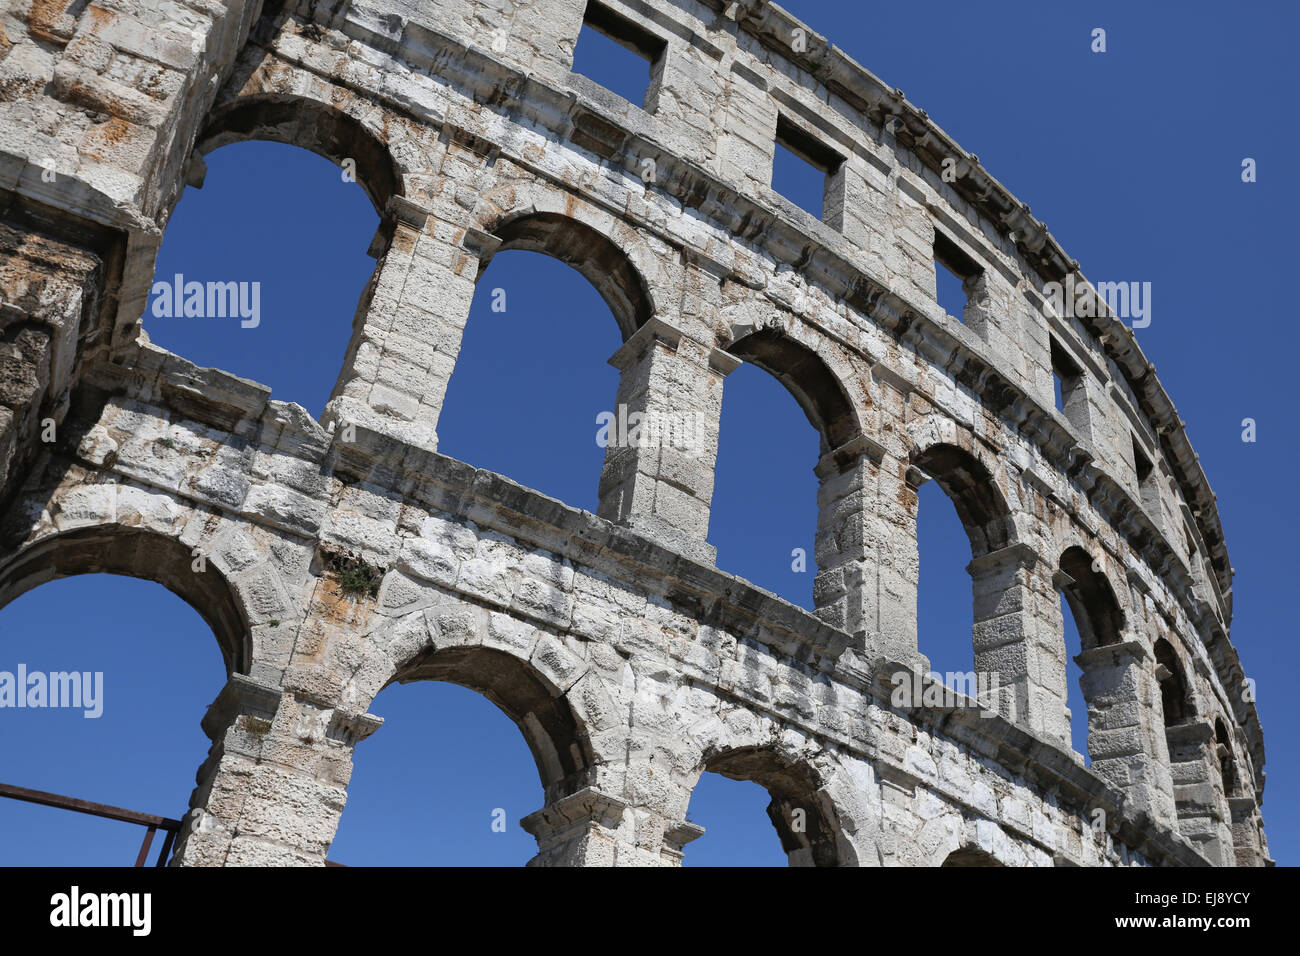 Colosseum of pula Stock Photo